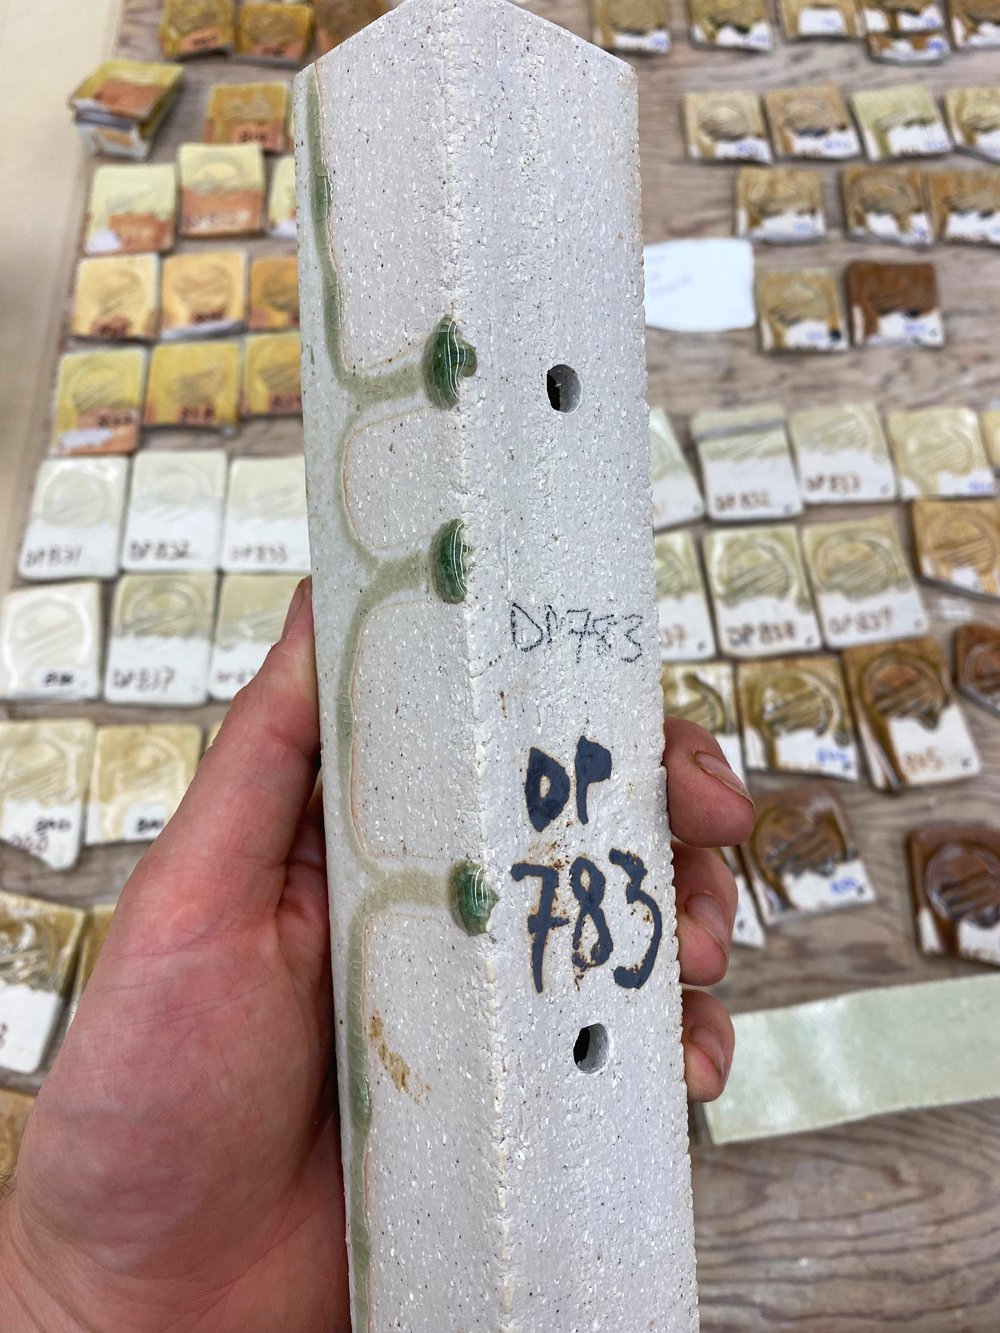 DP 783 (50% DP, 10% bone ash, 30% dolomite, 10% lime)